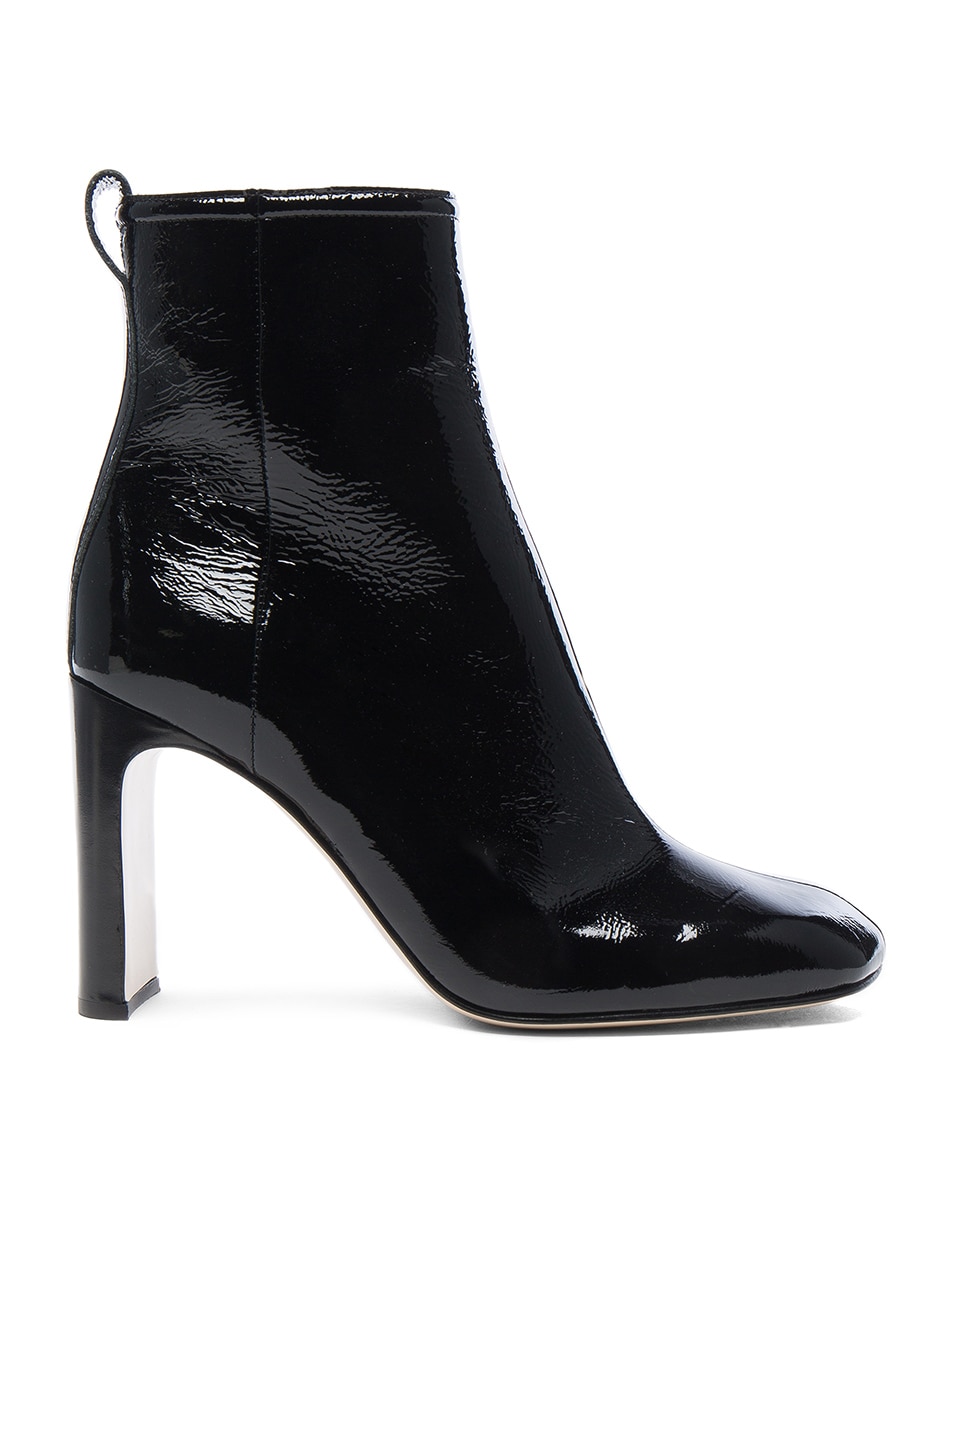 Rag & Bone Patent Leather Ellis Boot in Black | FWRD